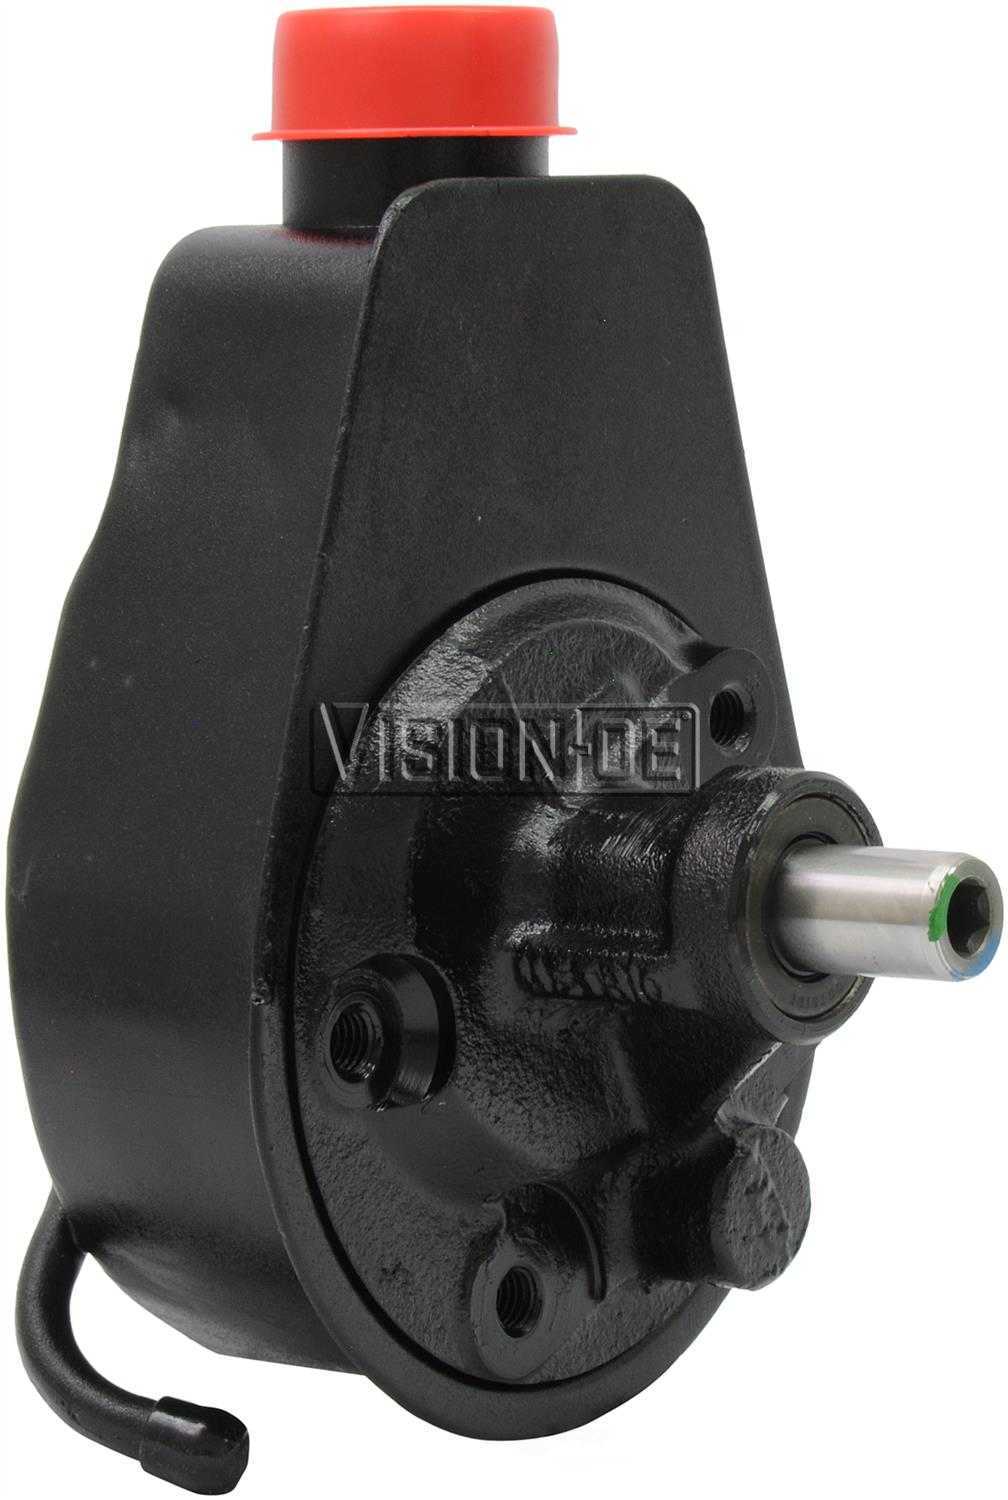 VISION-OE - Reman Power Steering Pump - VOE 731-2161